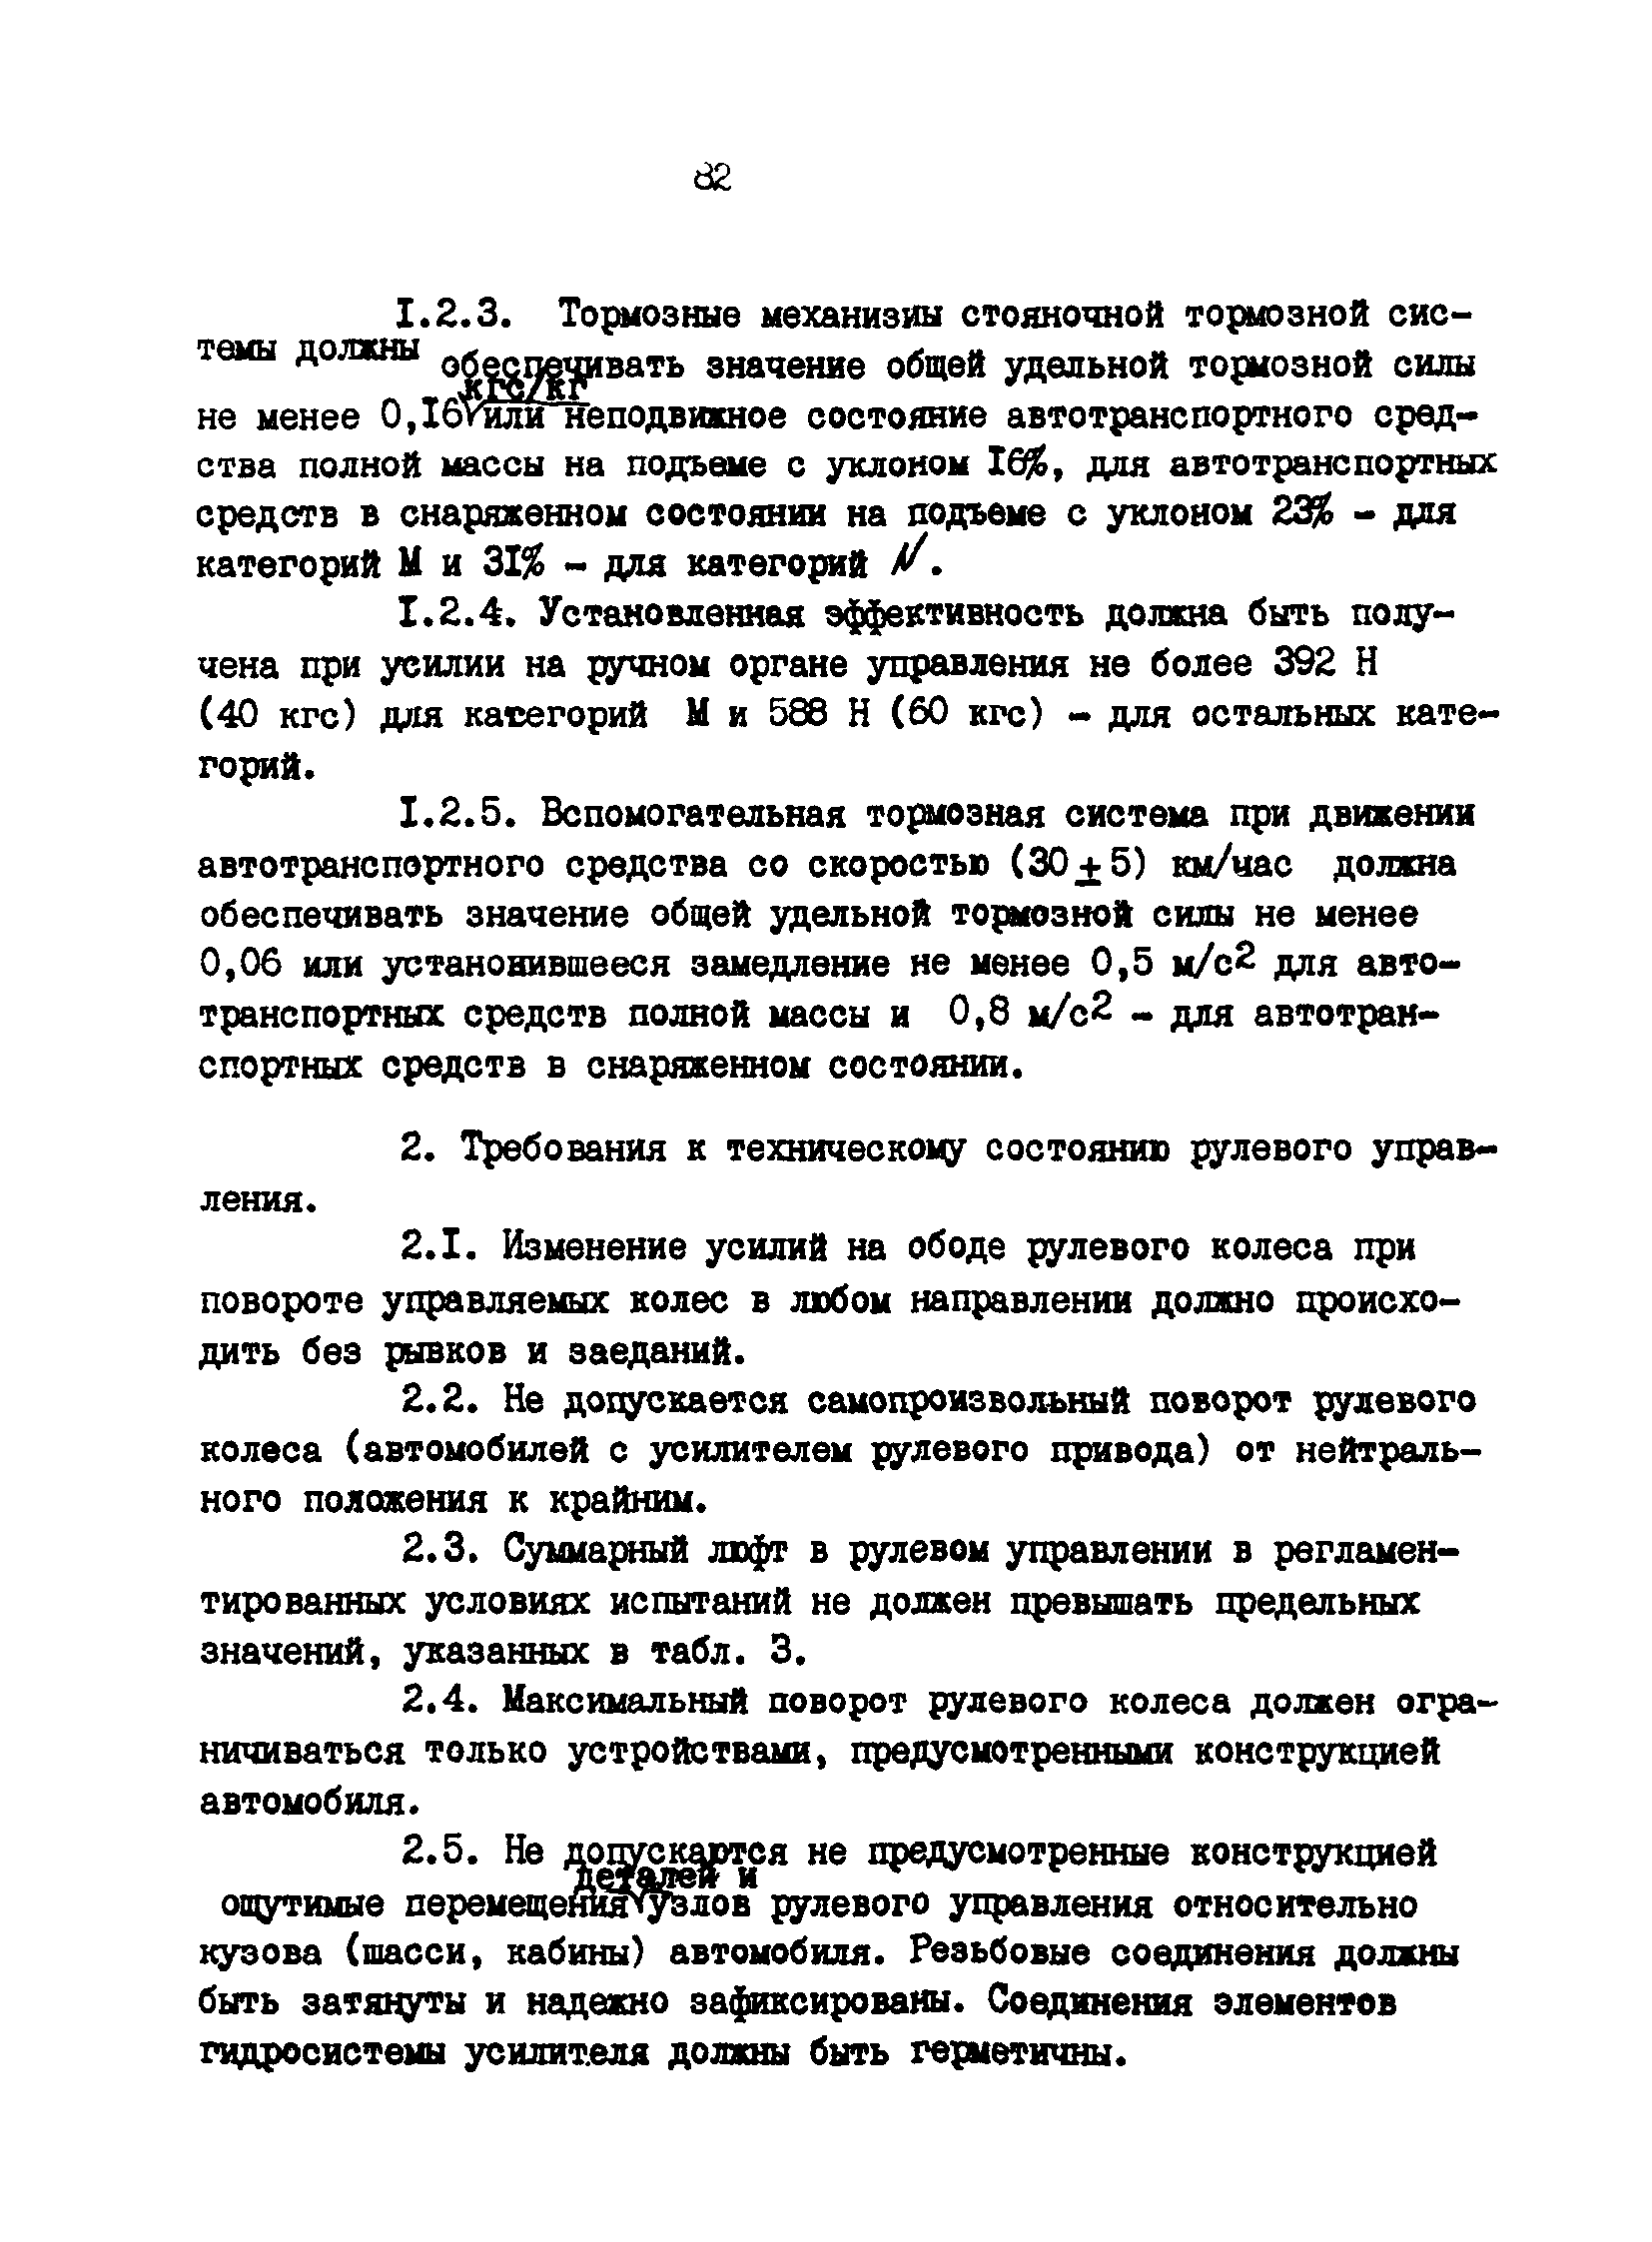 РД 200-РСФСР-12-0071-86-14